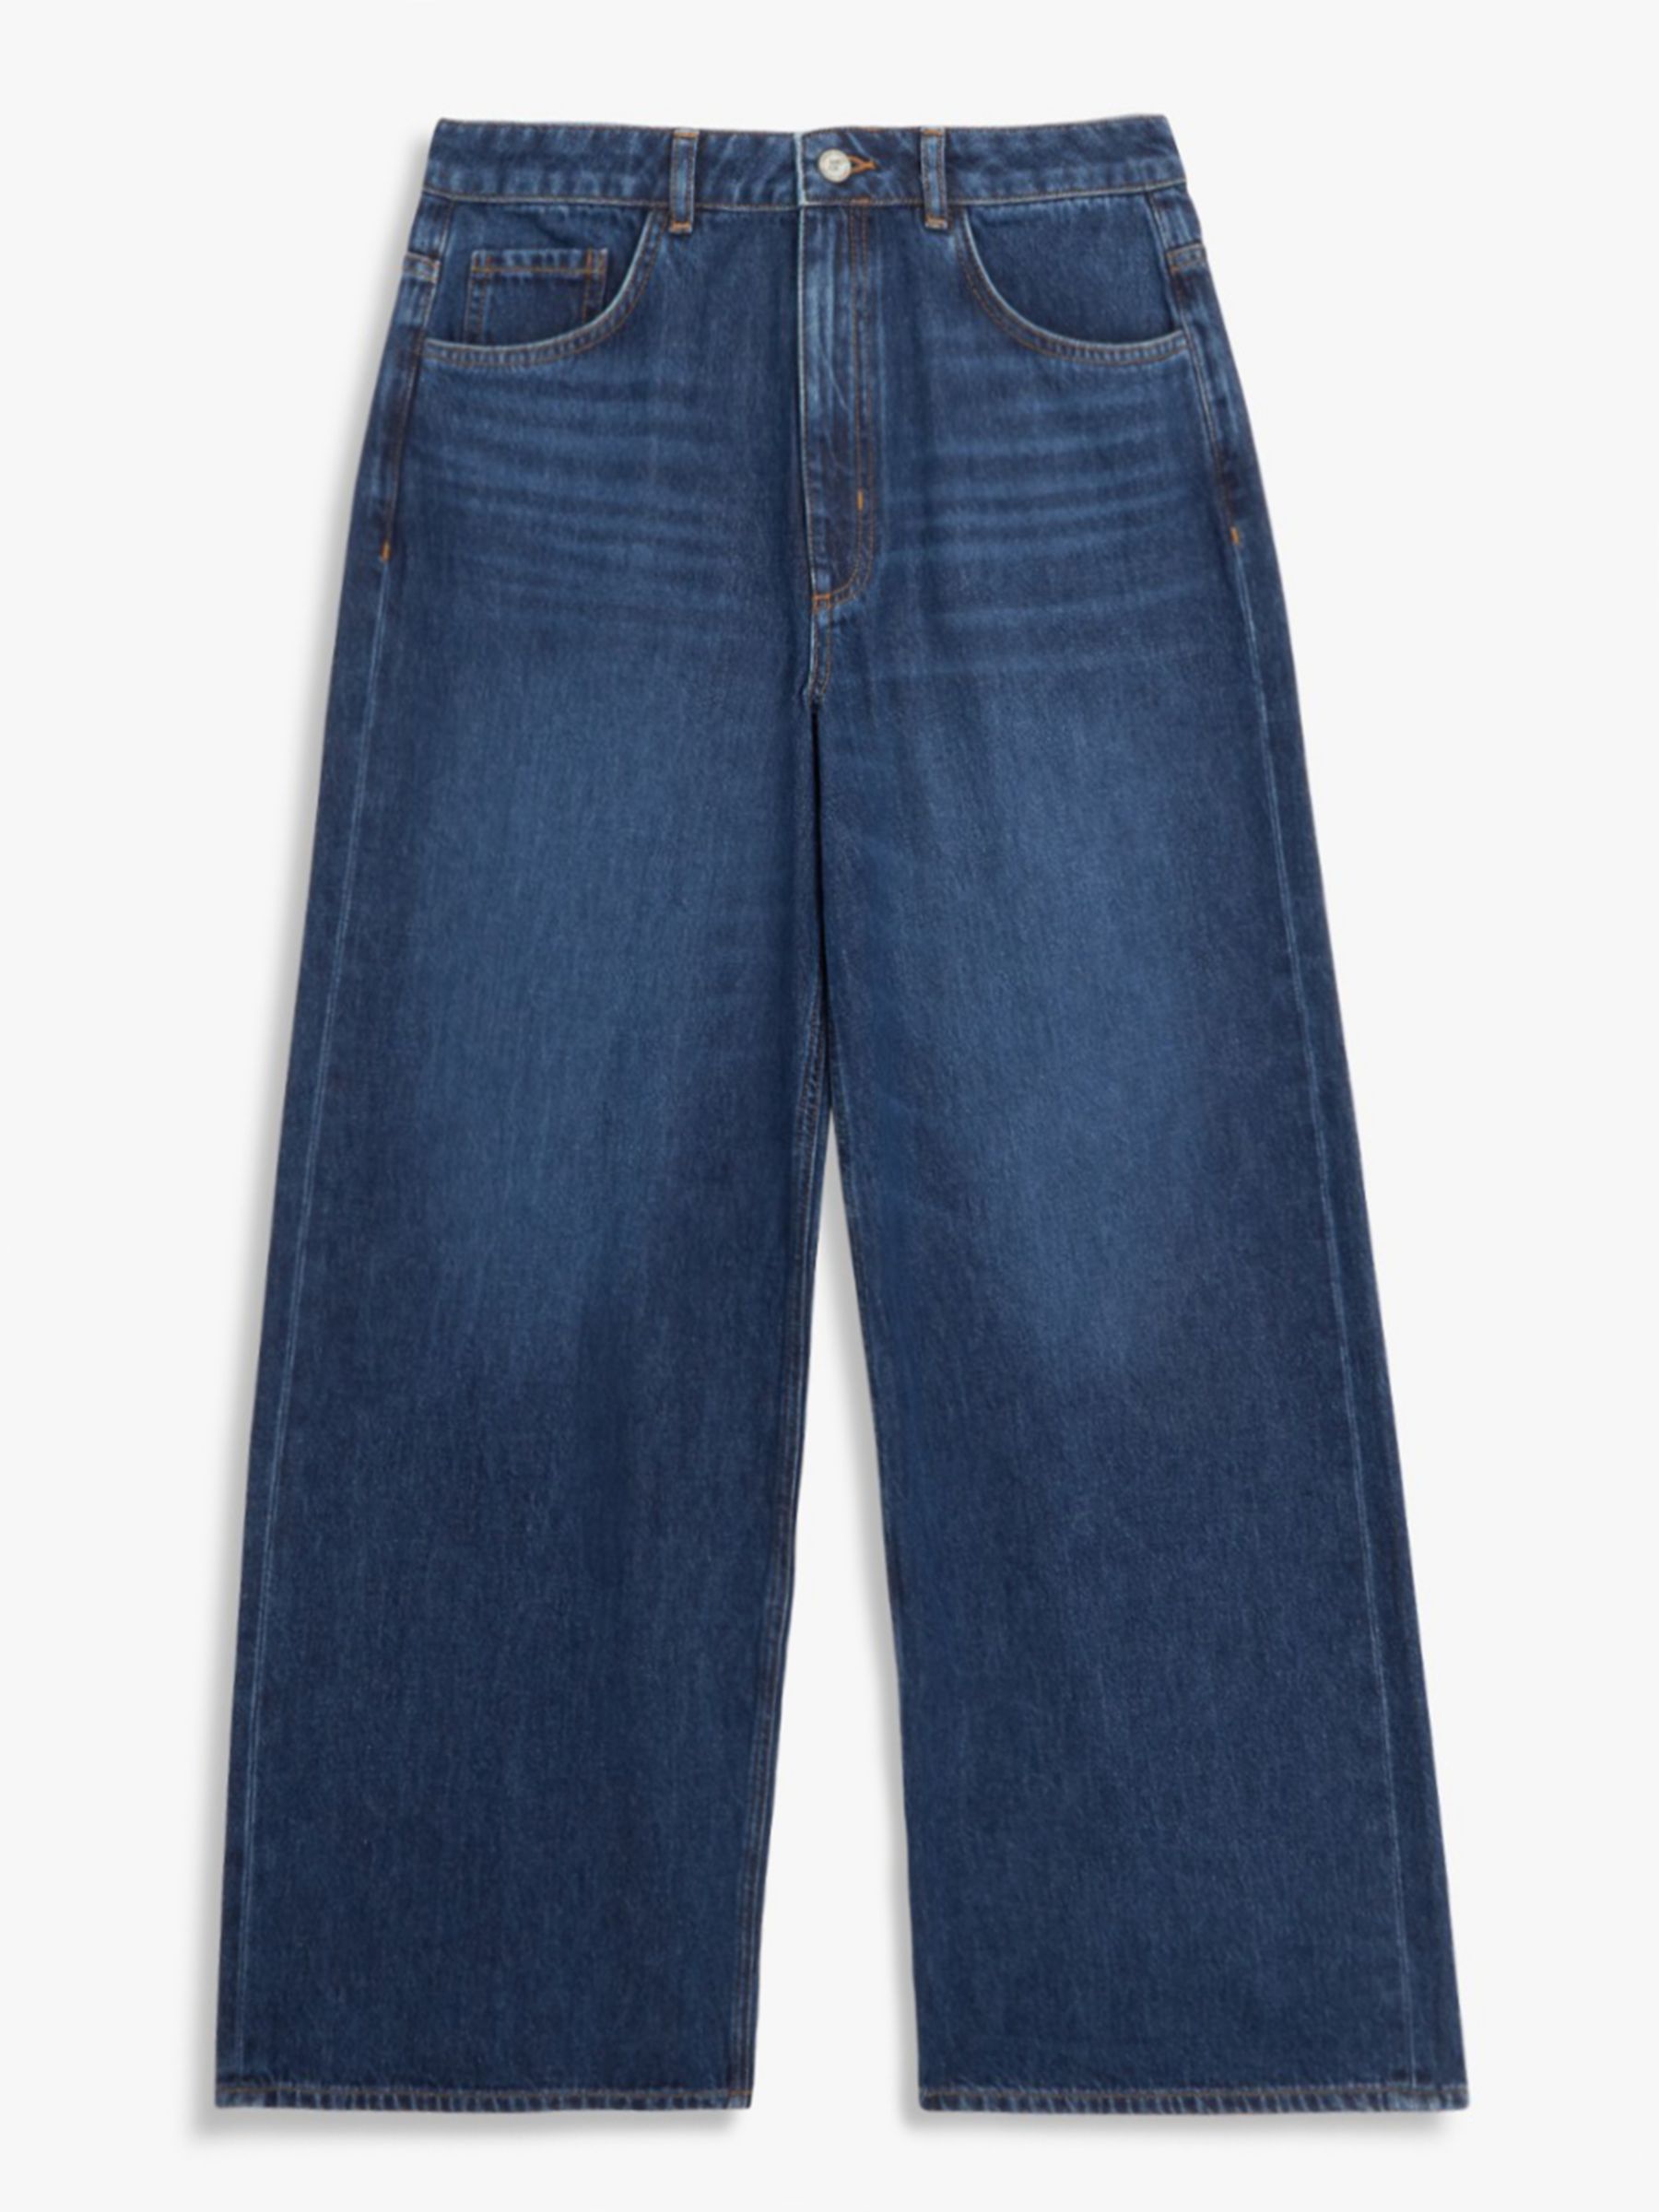 AND/OR Westlake Rigid Wide Leg Jeans, Dark Blue Wash, 34R